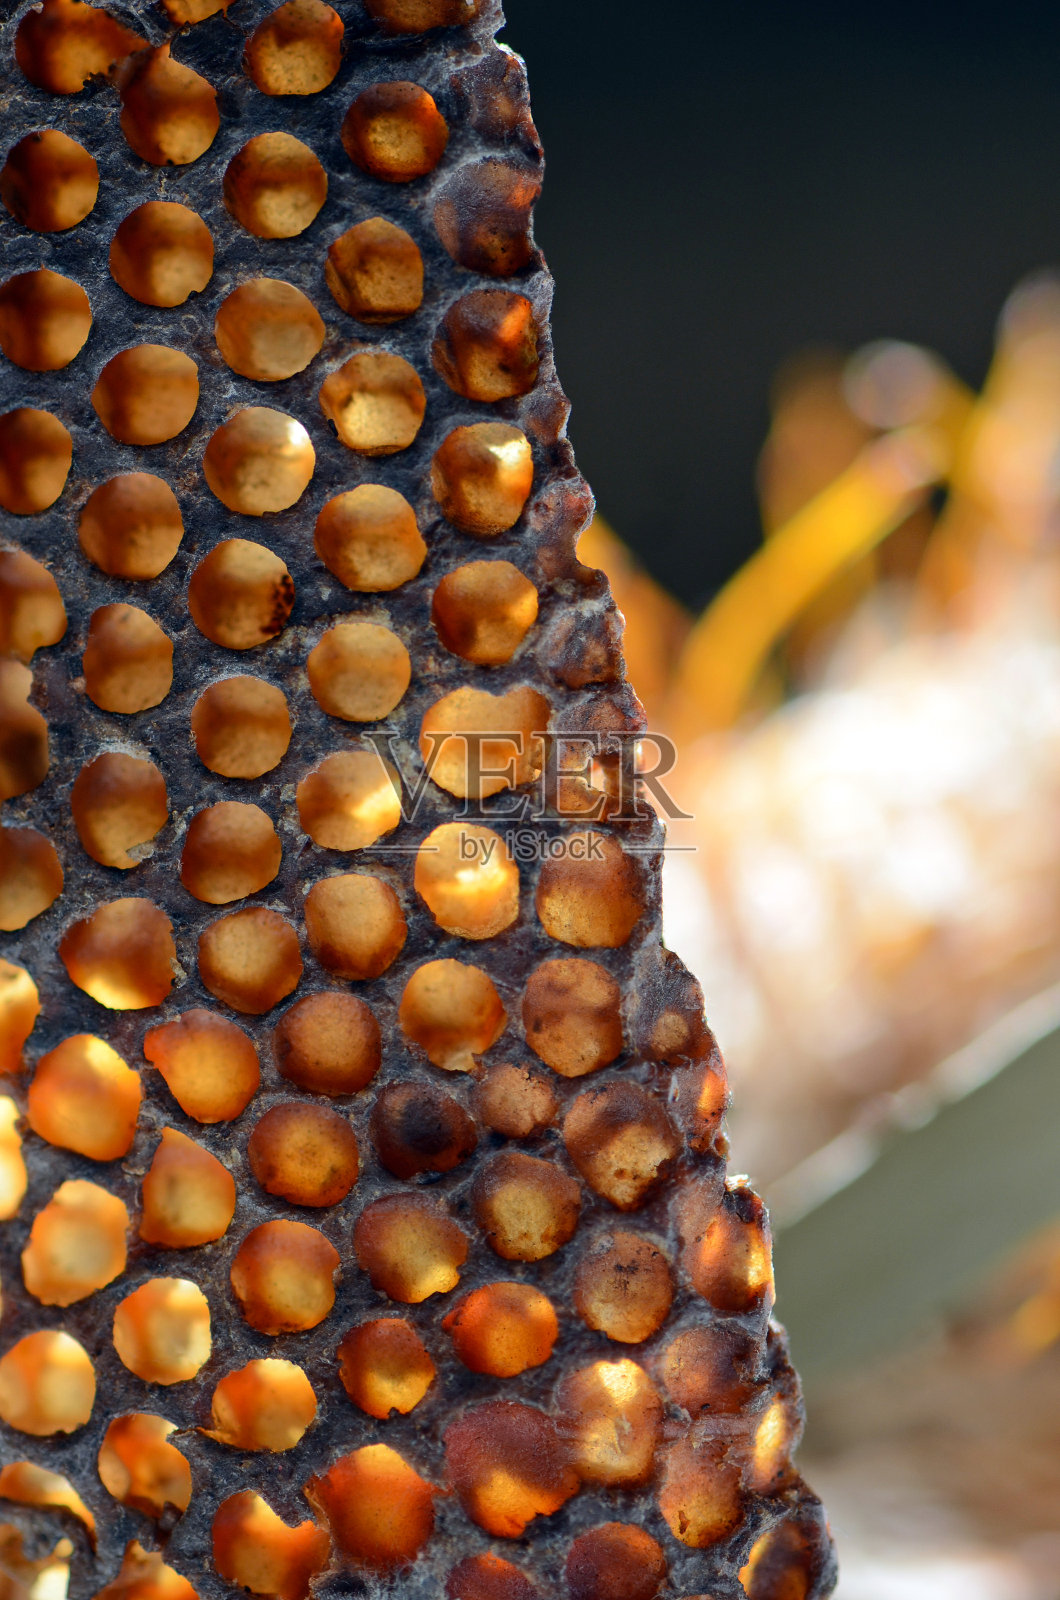 阳光透过天然野生蜜蜂的蜂巢照射的特写照片摄影图片